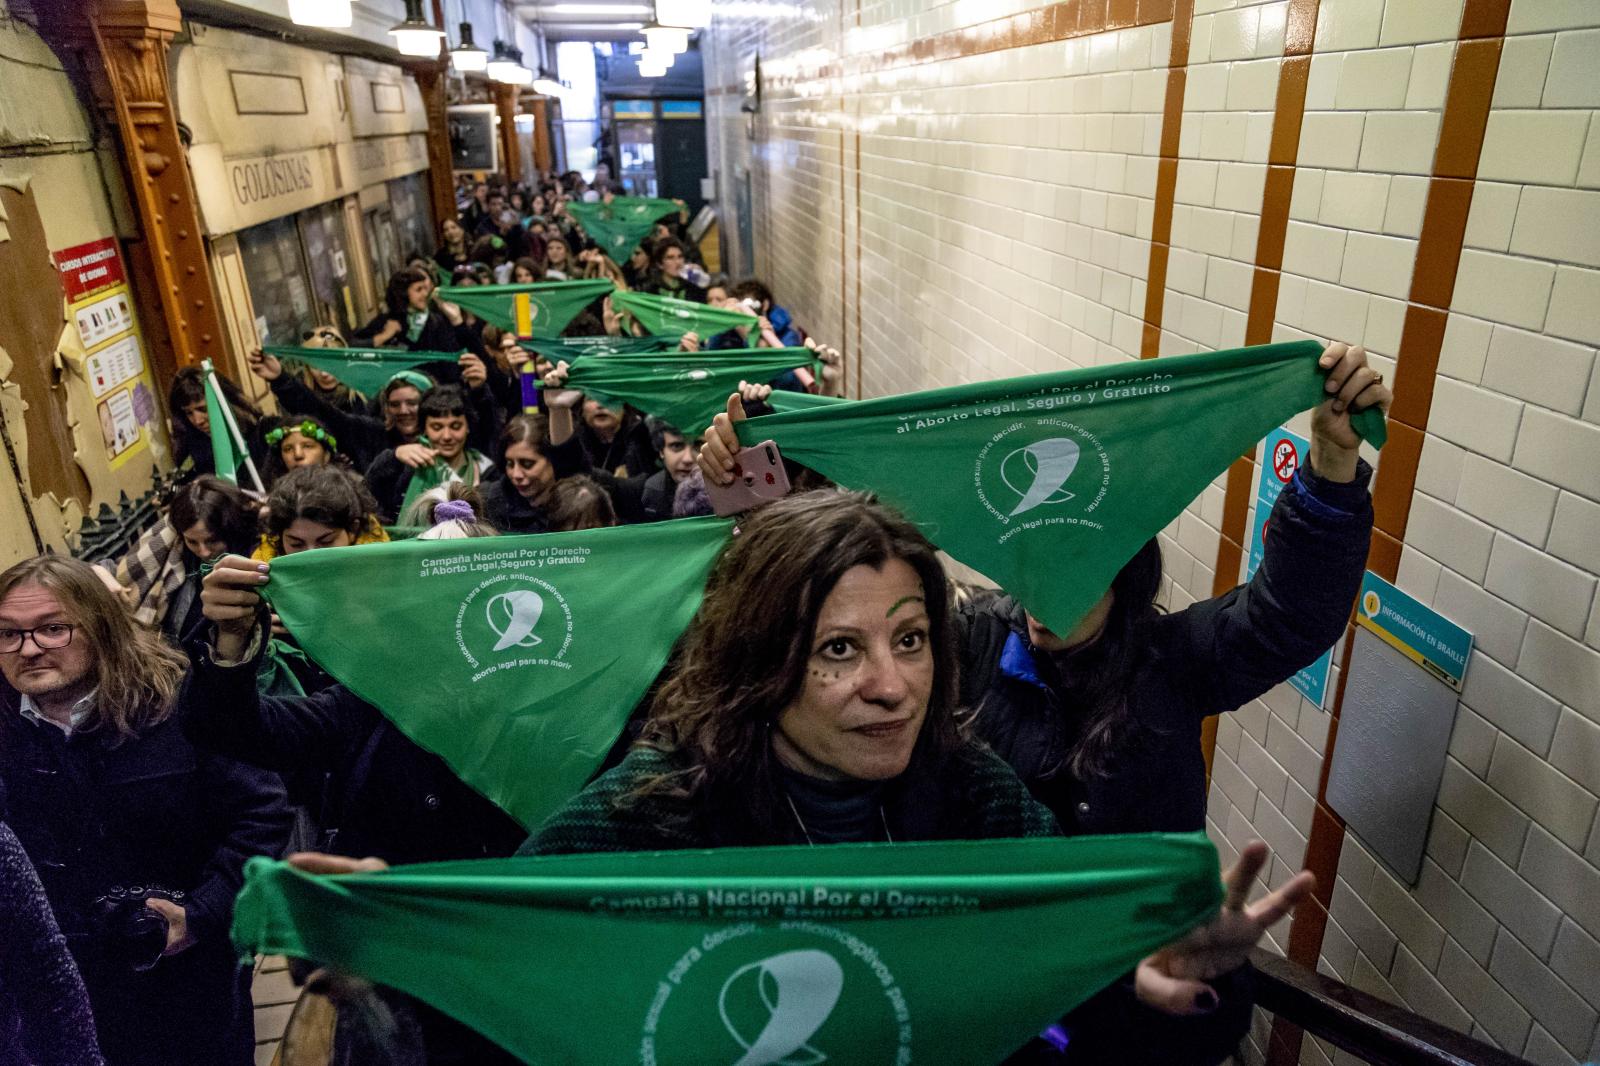 ARGENTINE - Performance for the abortion law in Buenos Aires subway. Performance pour la loi sur l'avortement dans le métro de Buenos Aires. | Buy this image